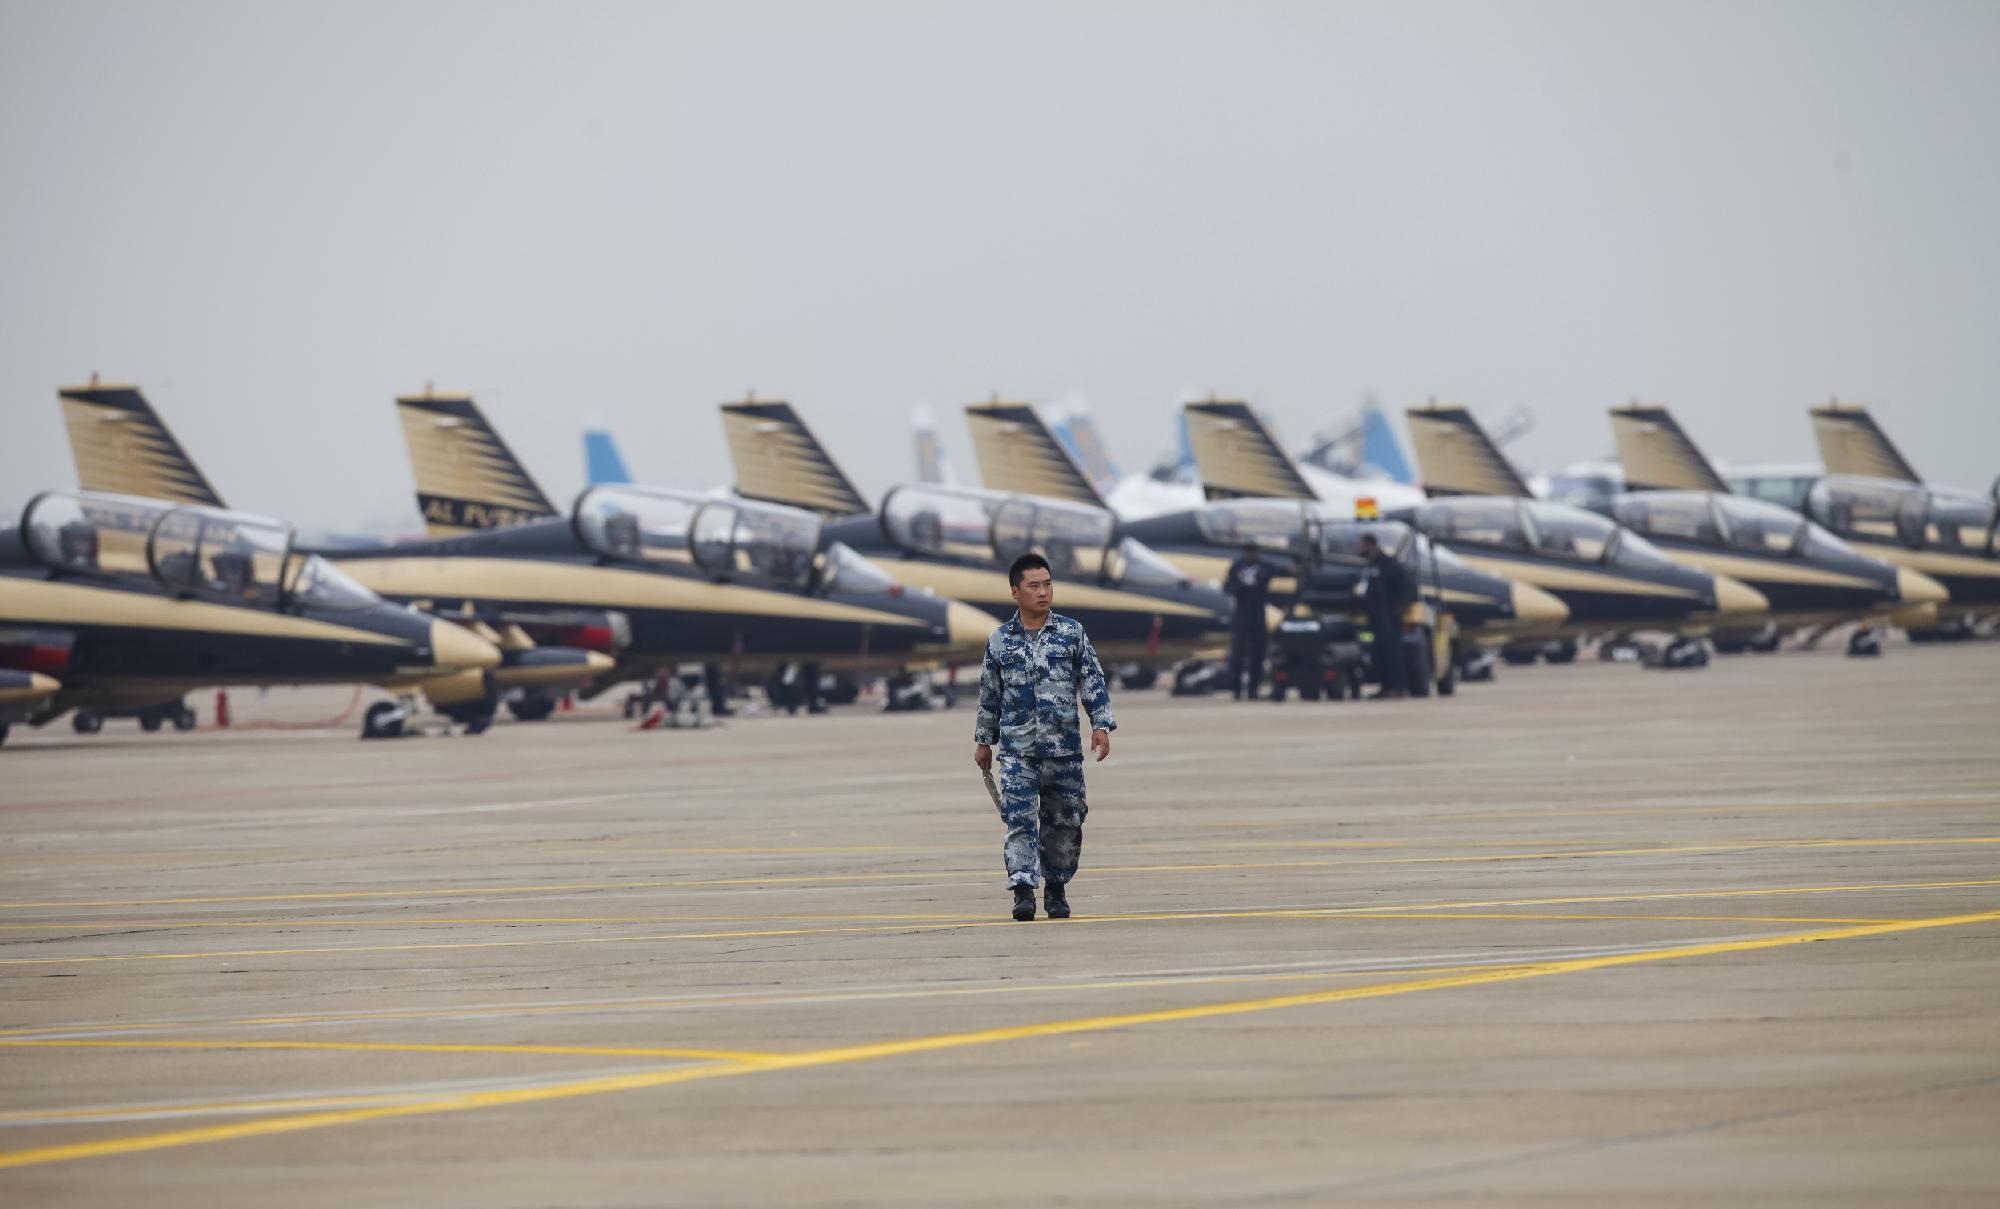 Oroszország és Kína ellenséges repülőgép-hordozó csoportok legyőzését gyakorolta